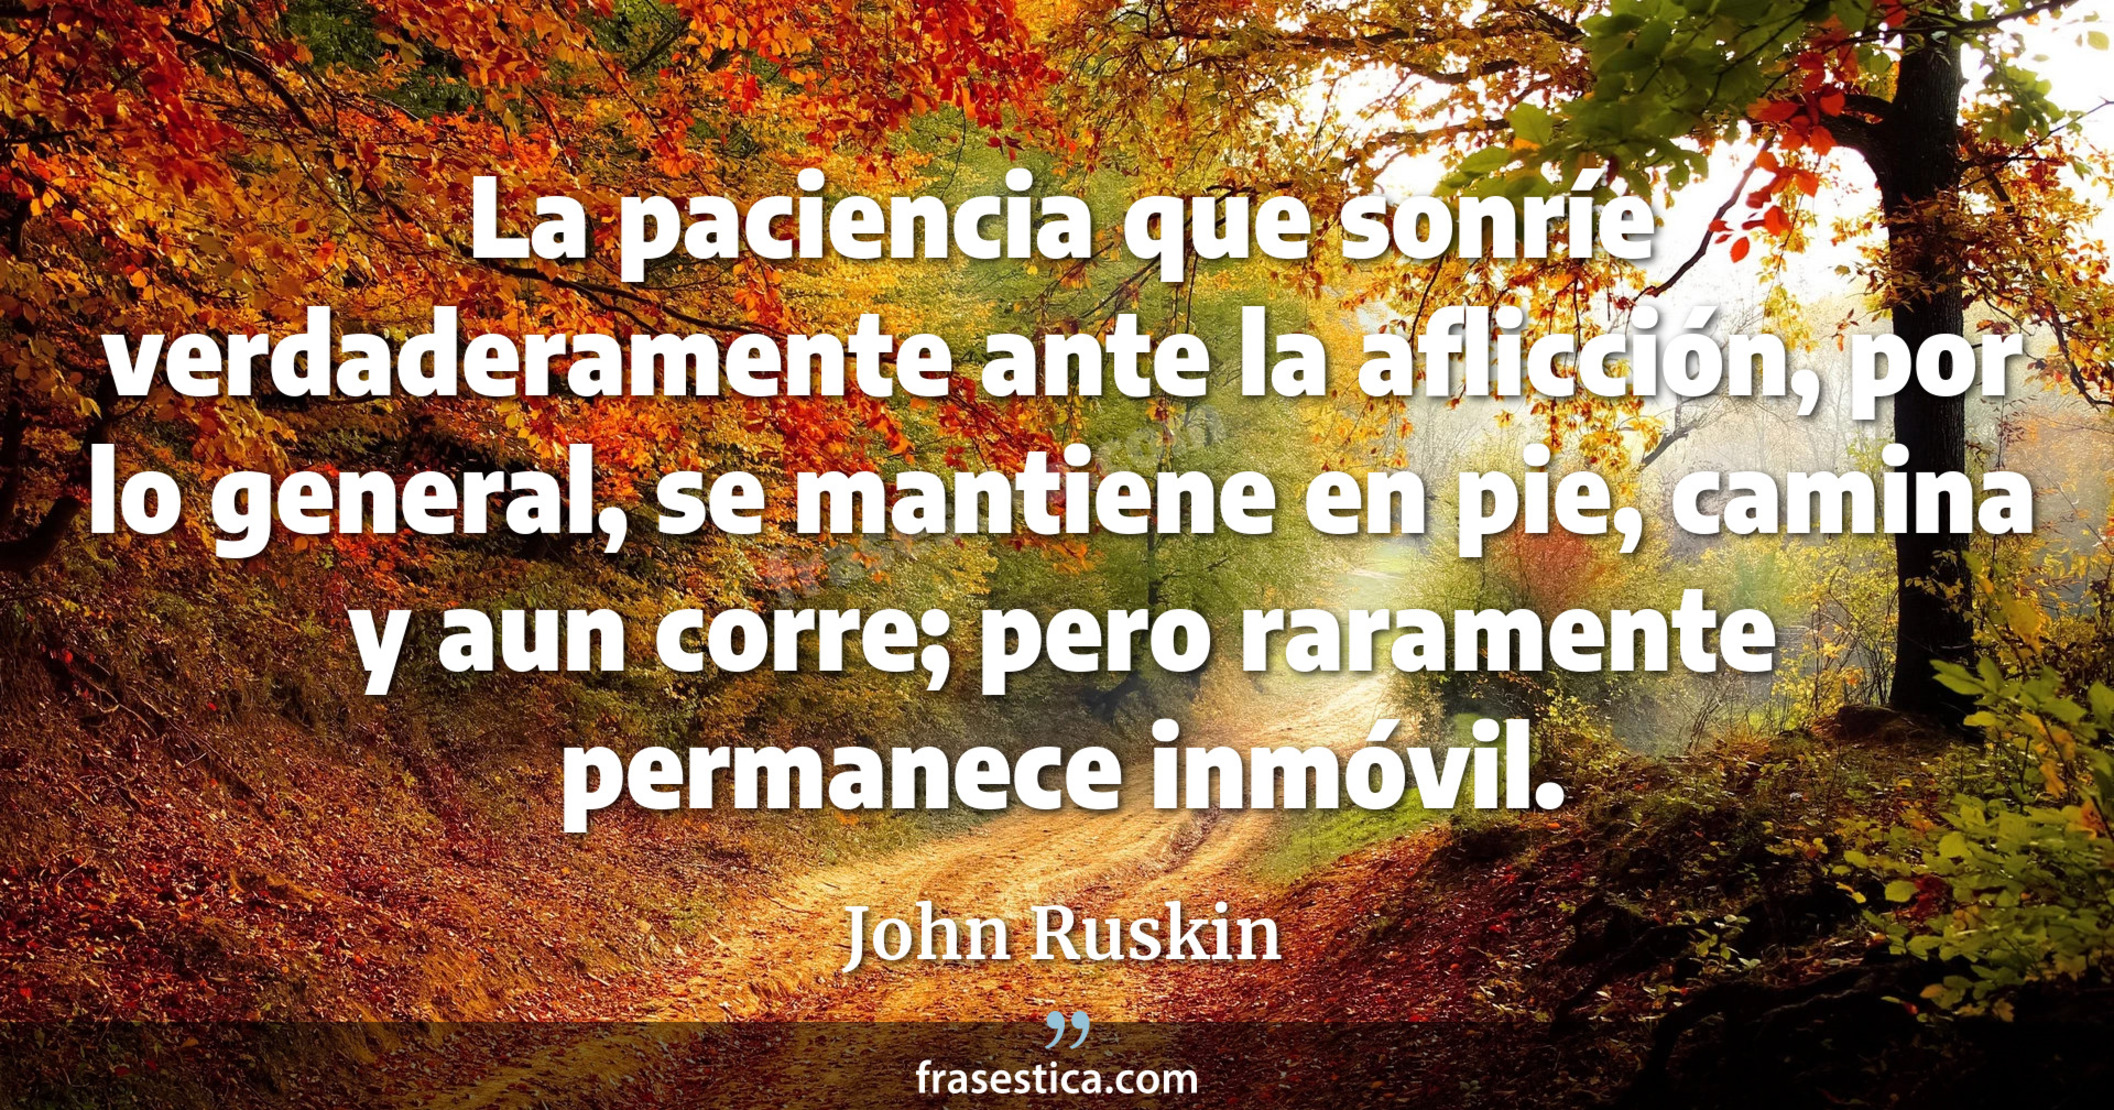 La paciencia que sonríe verdaderamente ante la aflicción, por lo general, se mantiene en pie, camina y aun corre; pero raramente permanece inmóvil. - John Ruskin